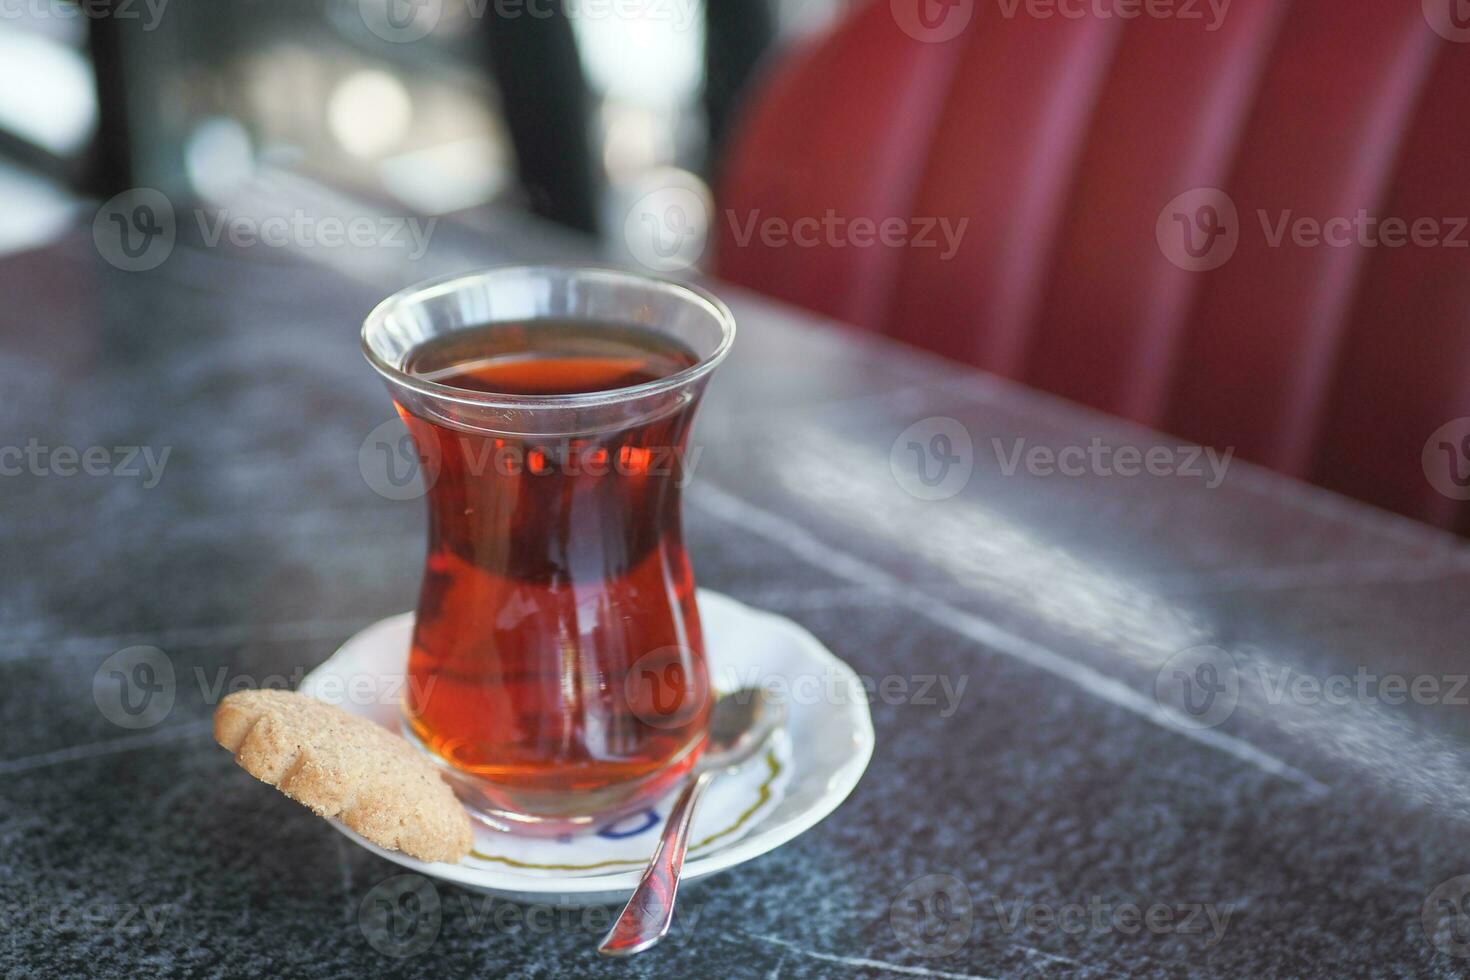 traditionell Türkisch Tee auf Weiß Tabelle . foto